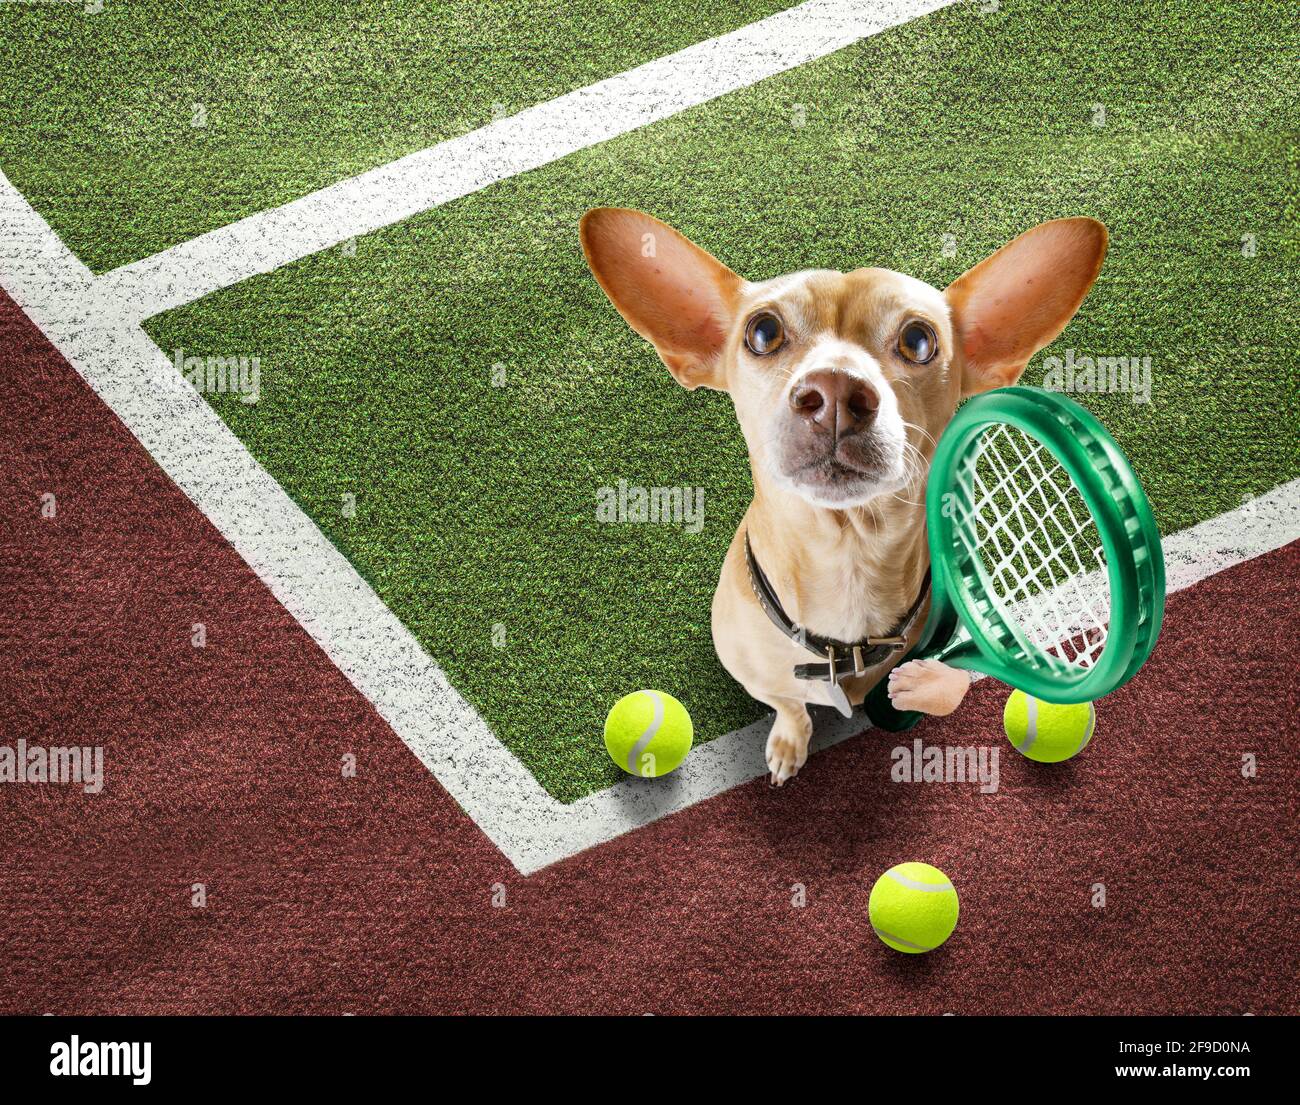 giocatore sportivo chihuahua cane sul campo da tennis con palle, pronto per  un gioco o una partita Foto stock - Alamy